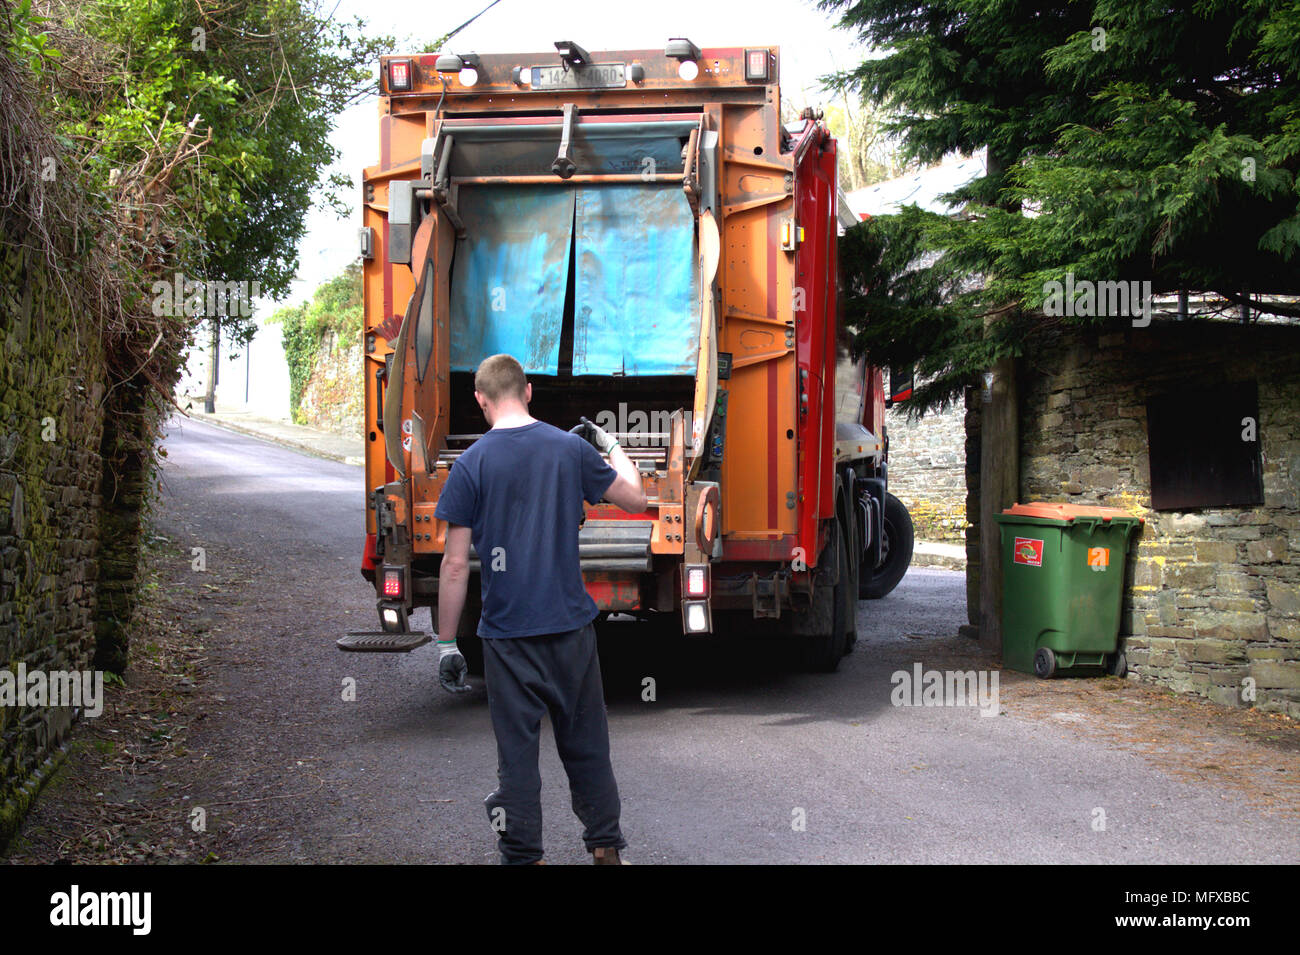 Jungen Erwachsenen männlichen Führen einer Mülltonne Sammlung Lkw, Lkw, dass die Umkehr in eine schmale Straße, vor der Erfassung der Müll, Müll. Stockfoto